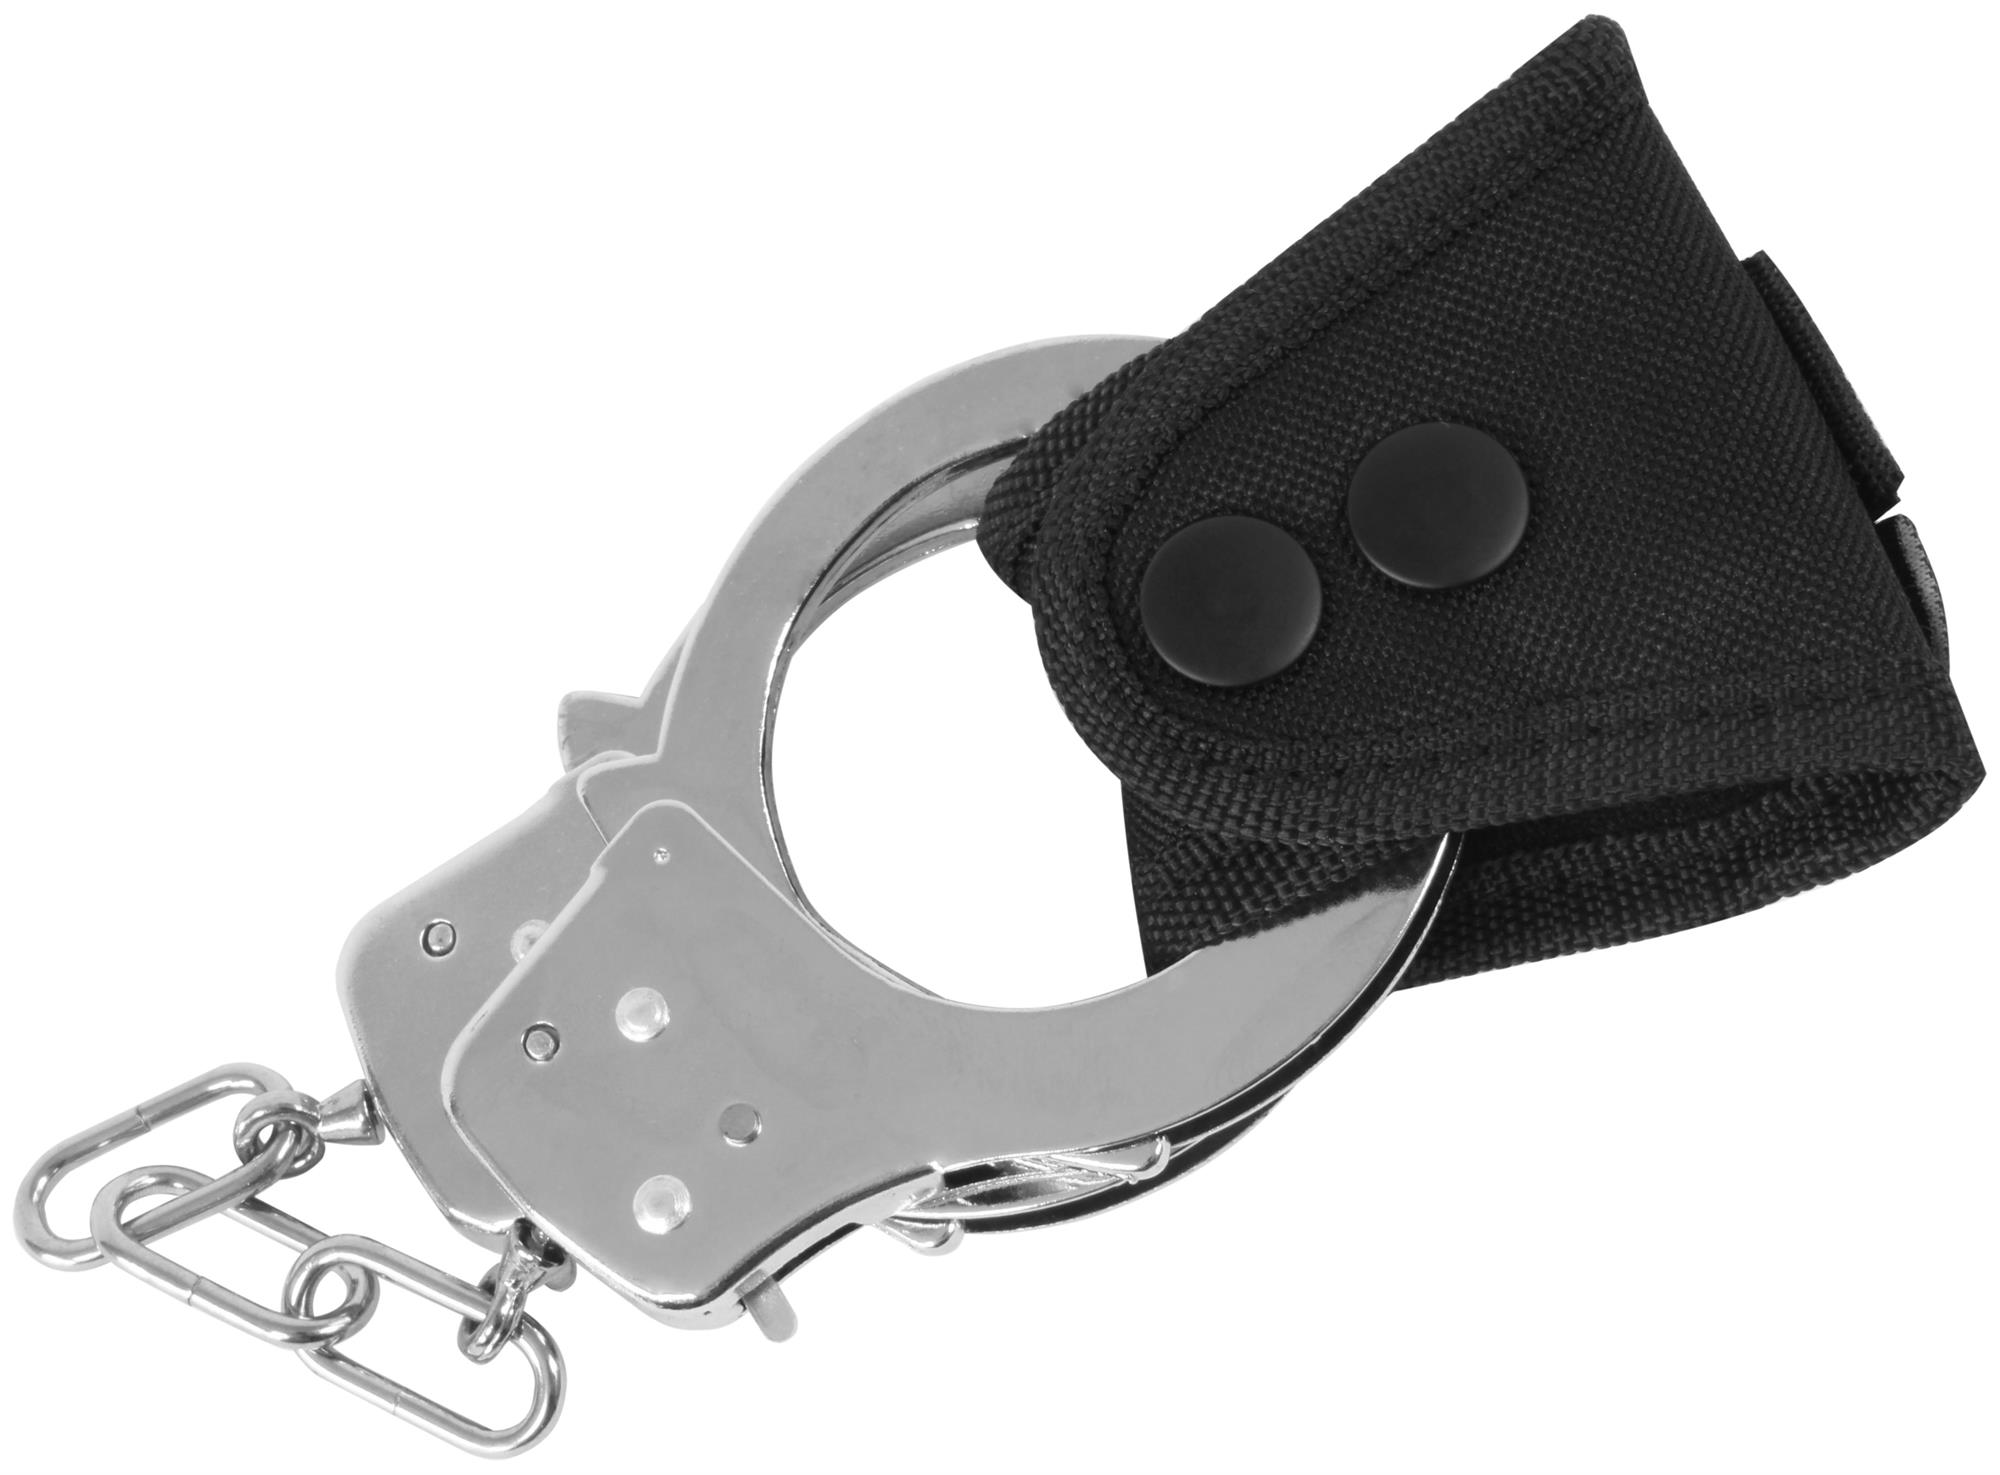 Handschellenhalter Z-1331 Echt Leder Security Tasche POLIZEI P.S.N.I